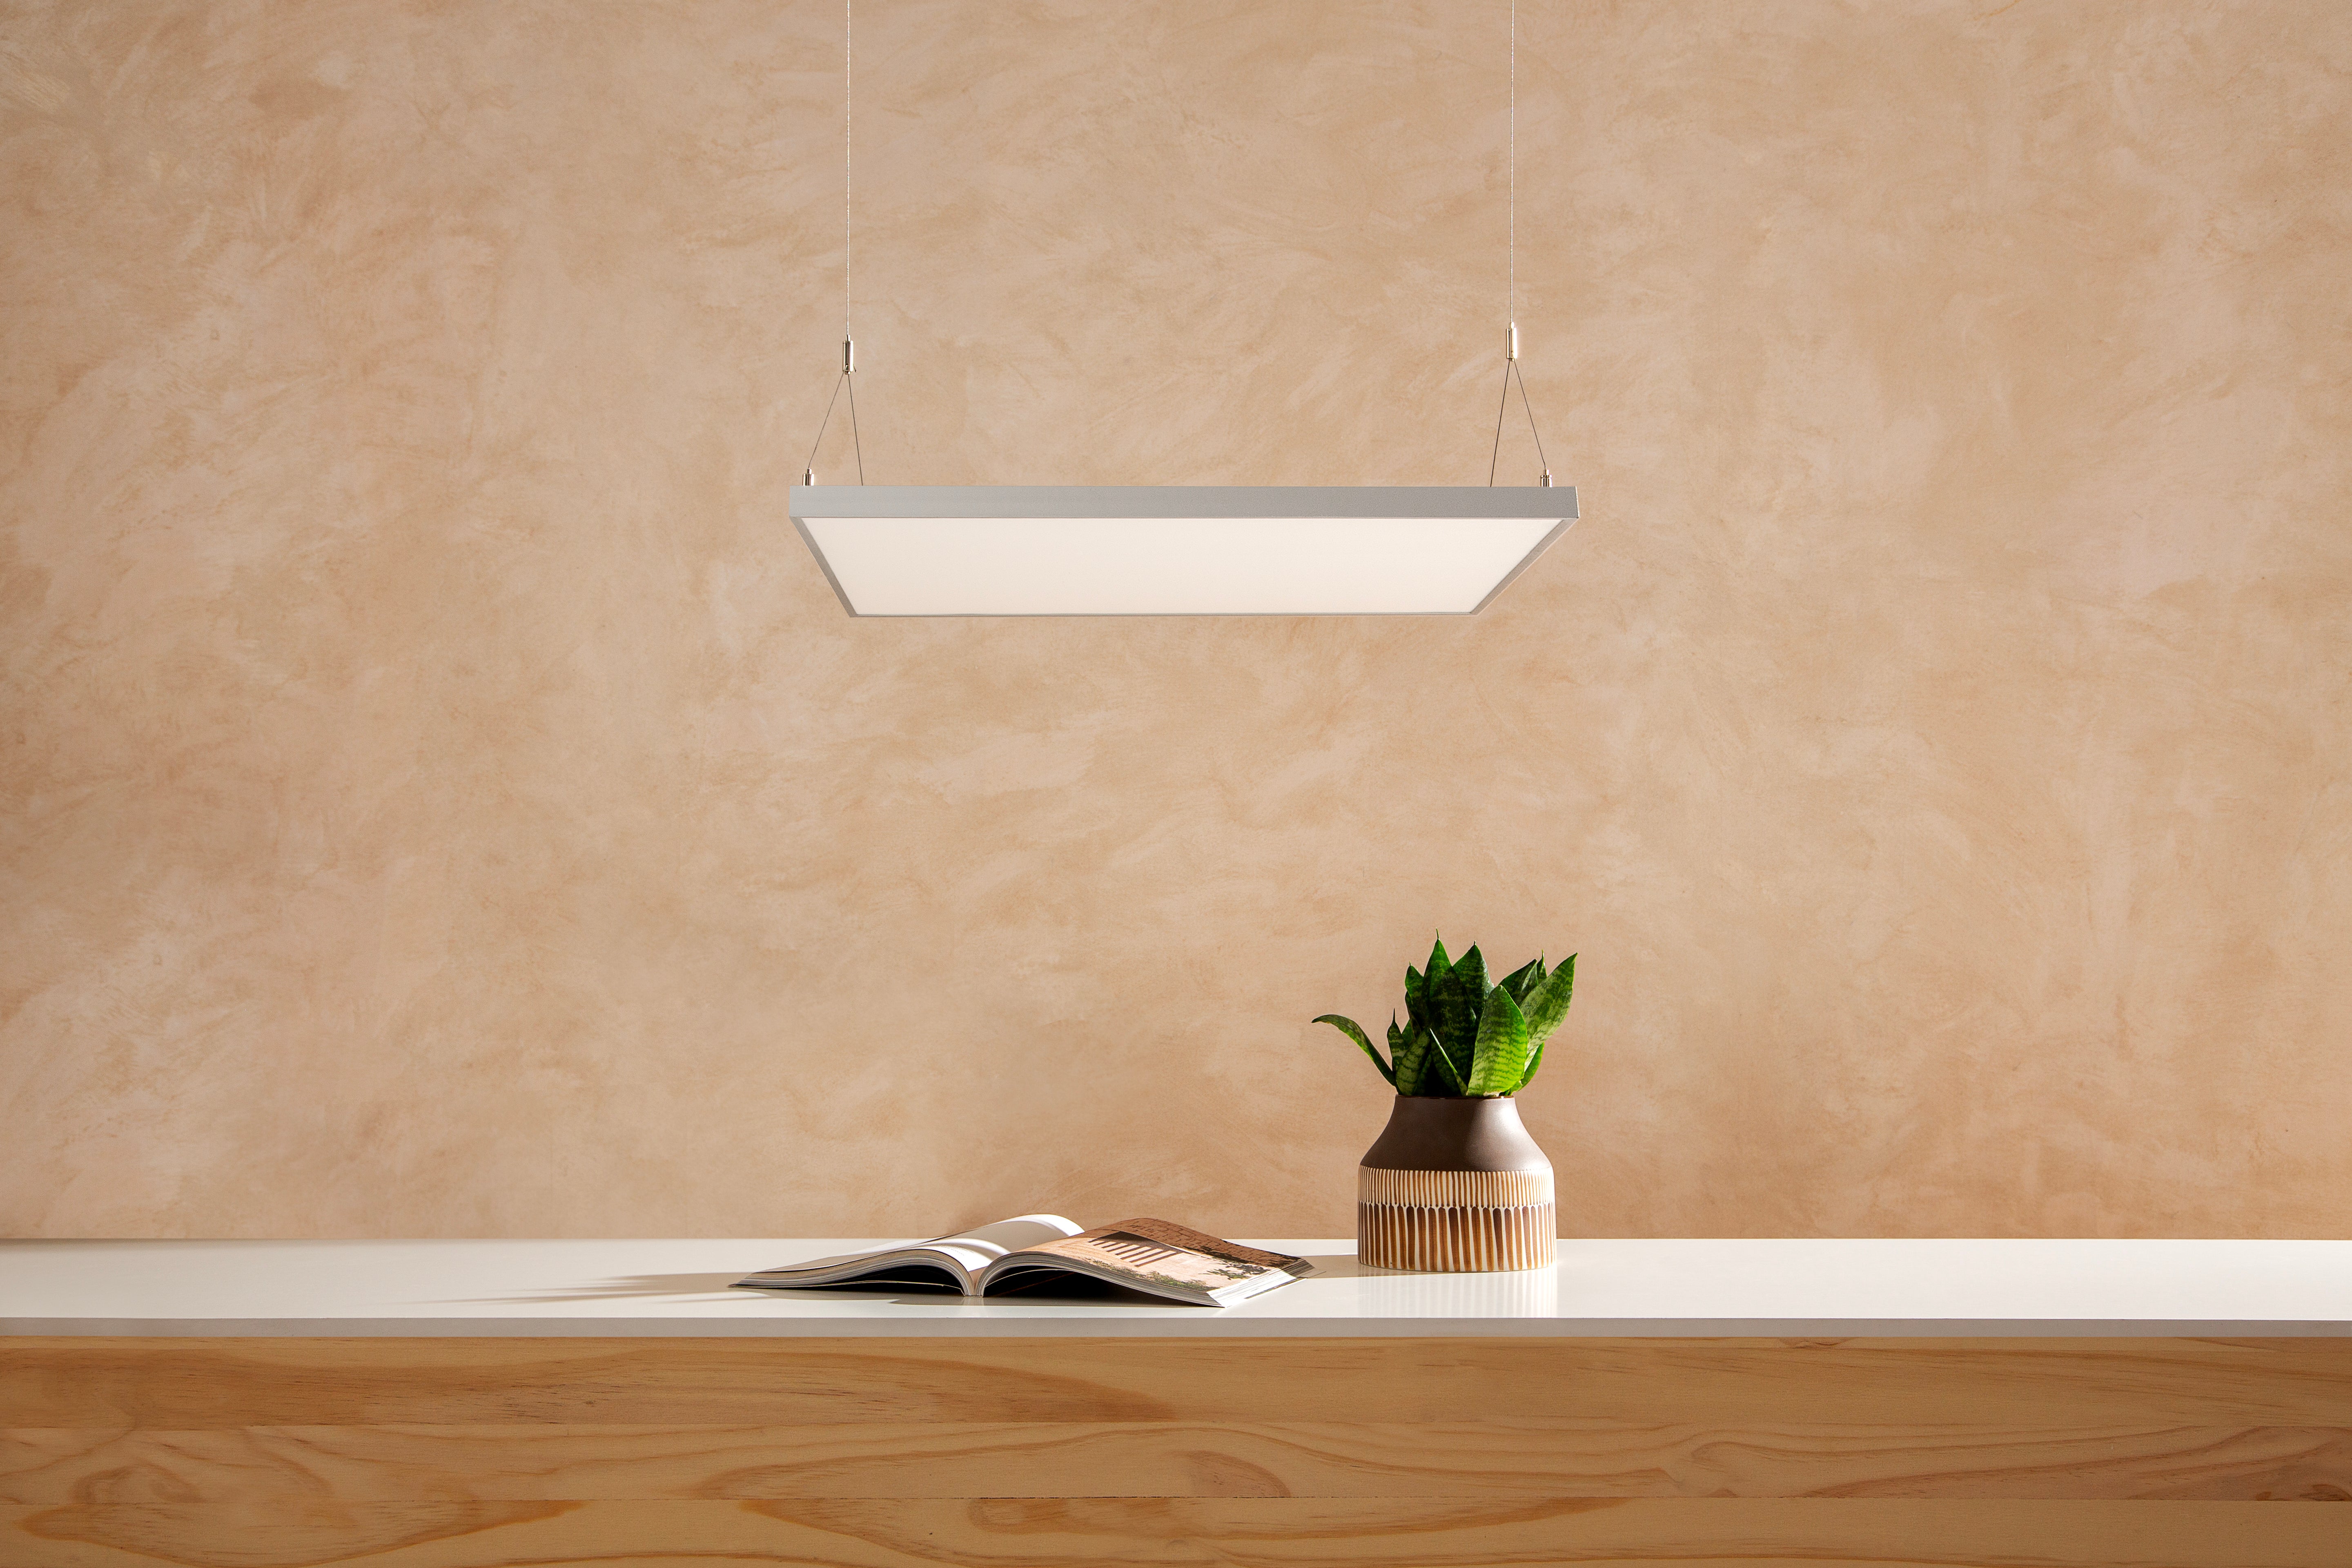 Fondo luminoso ADA para mueble alto de cocina: Base con luz LED